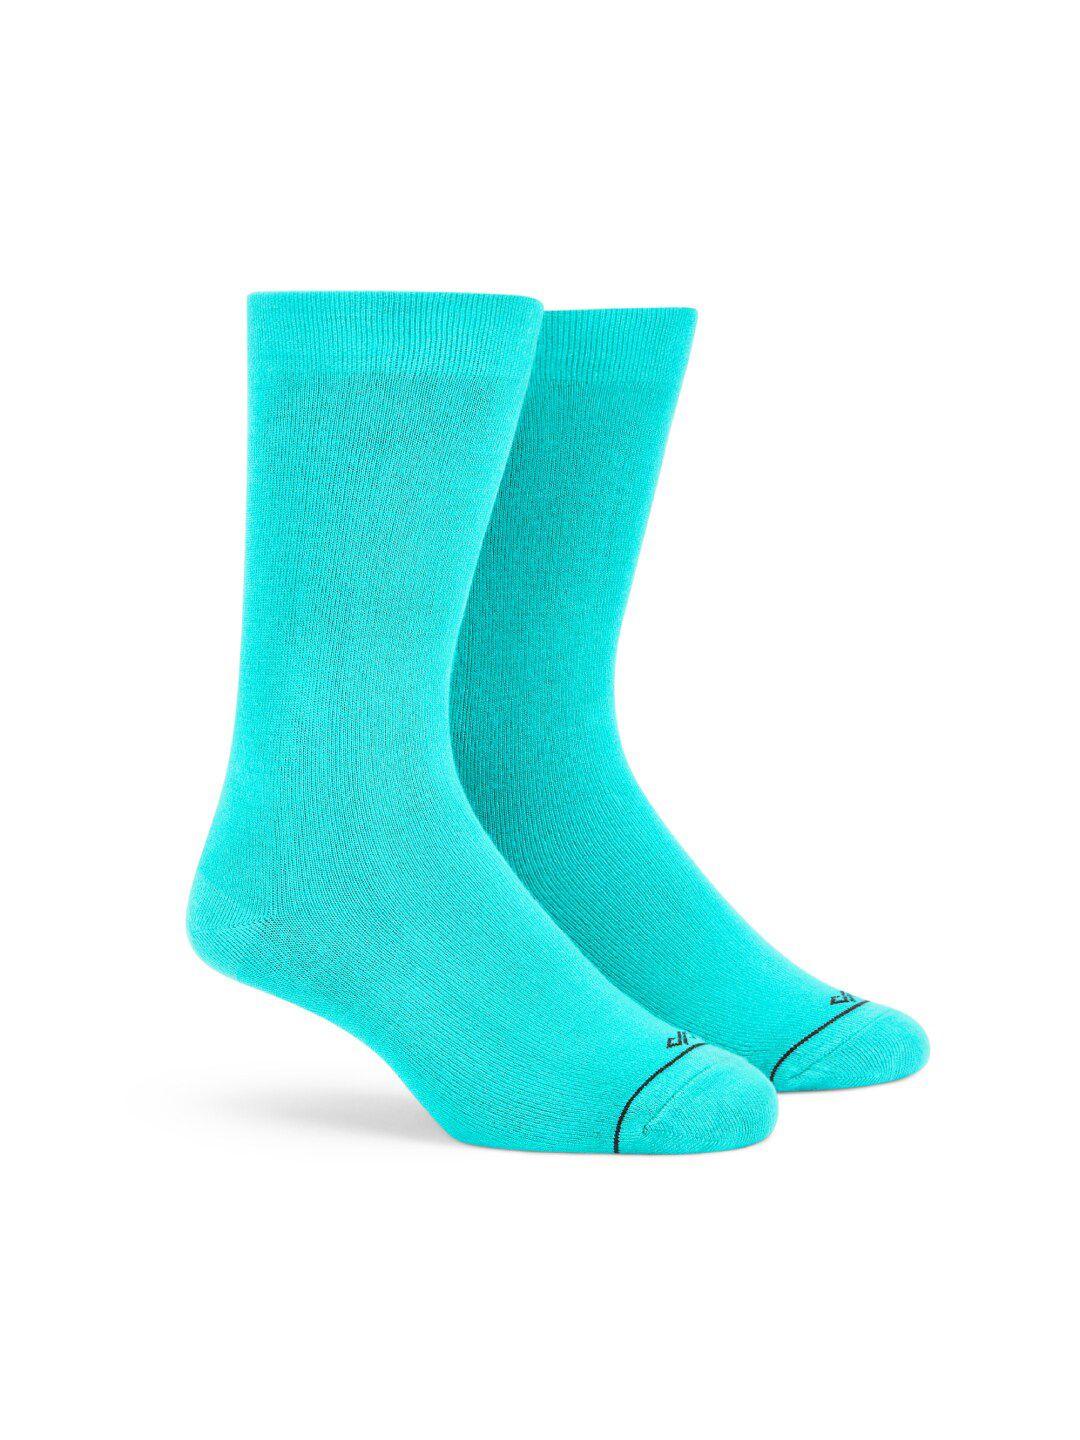 dynamocks anti-bacterial calf-length socks